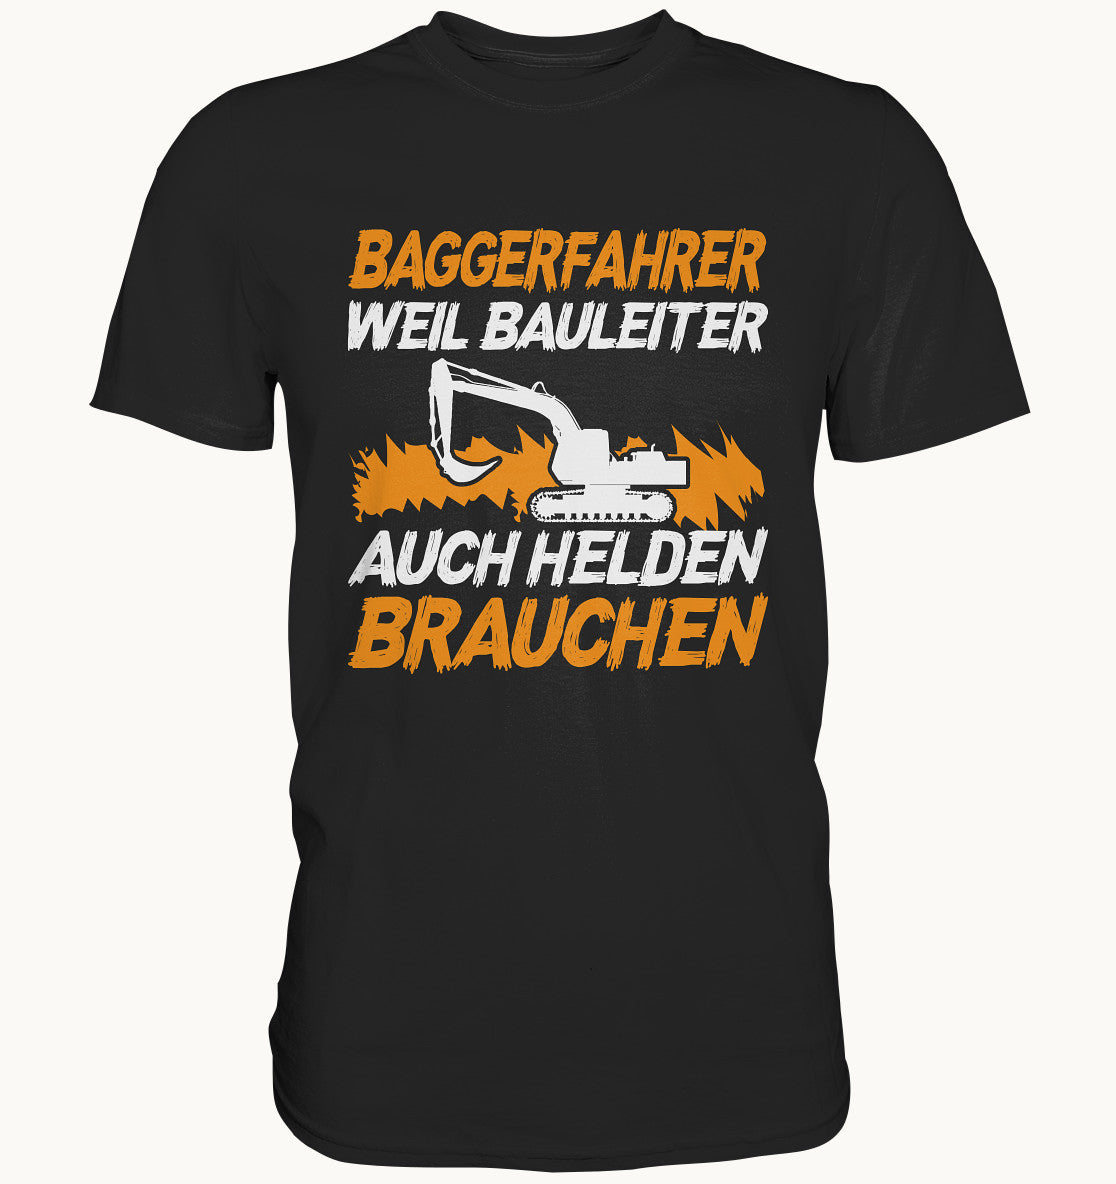 Baggerfahrer, weil Bauleiter auch Helden brauchen - Premium Shirt